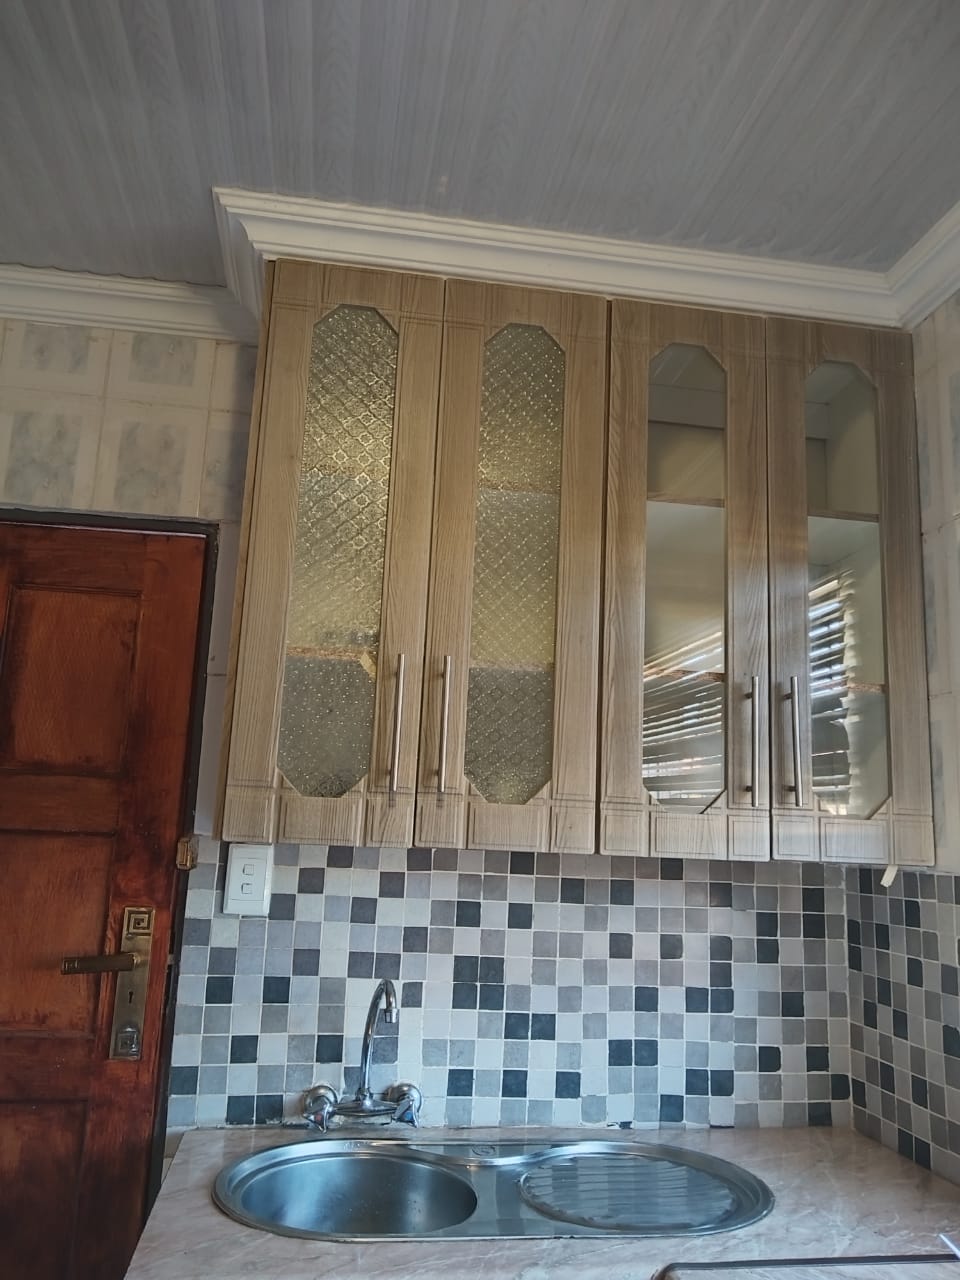 To Let 2 Bedroom Property for Rent in Soshanguve XX Gauteng